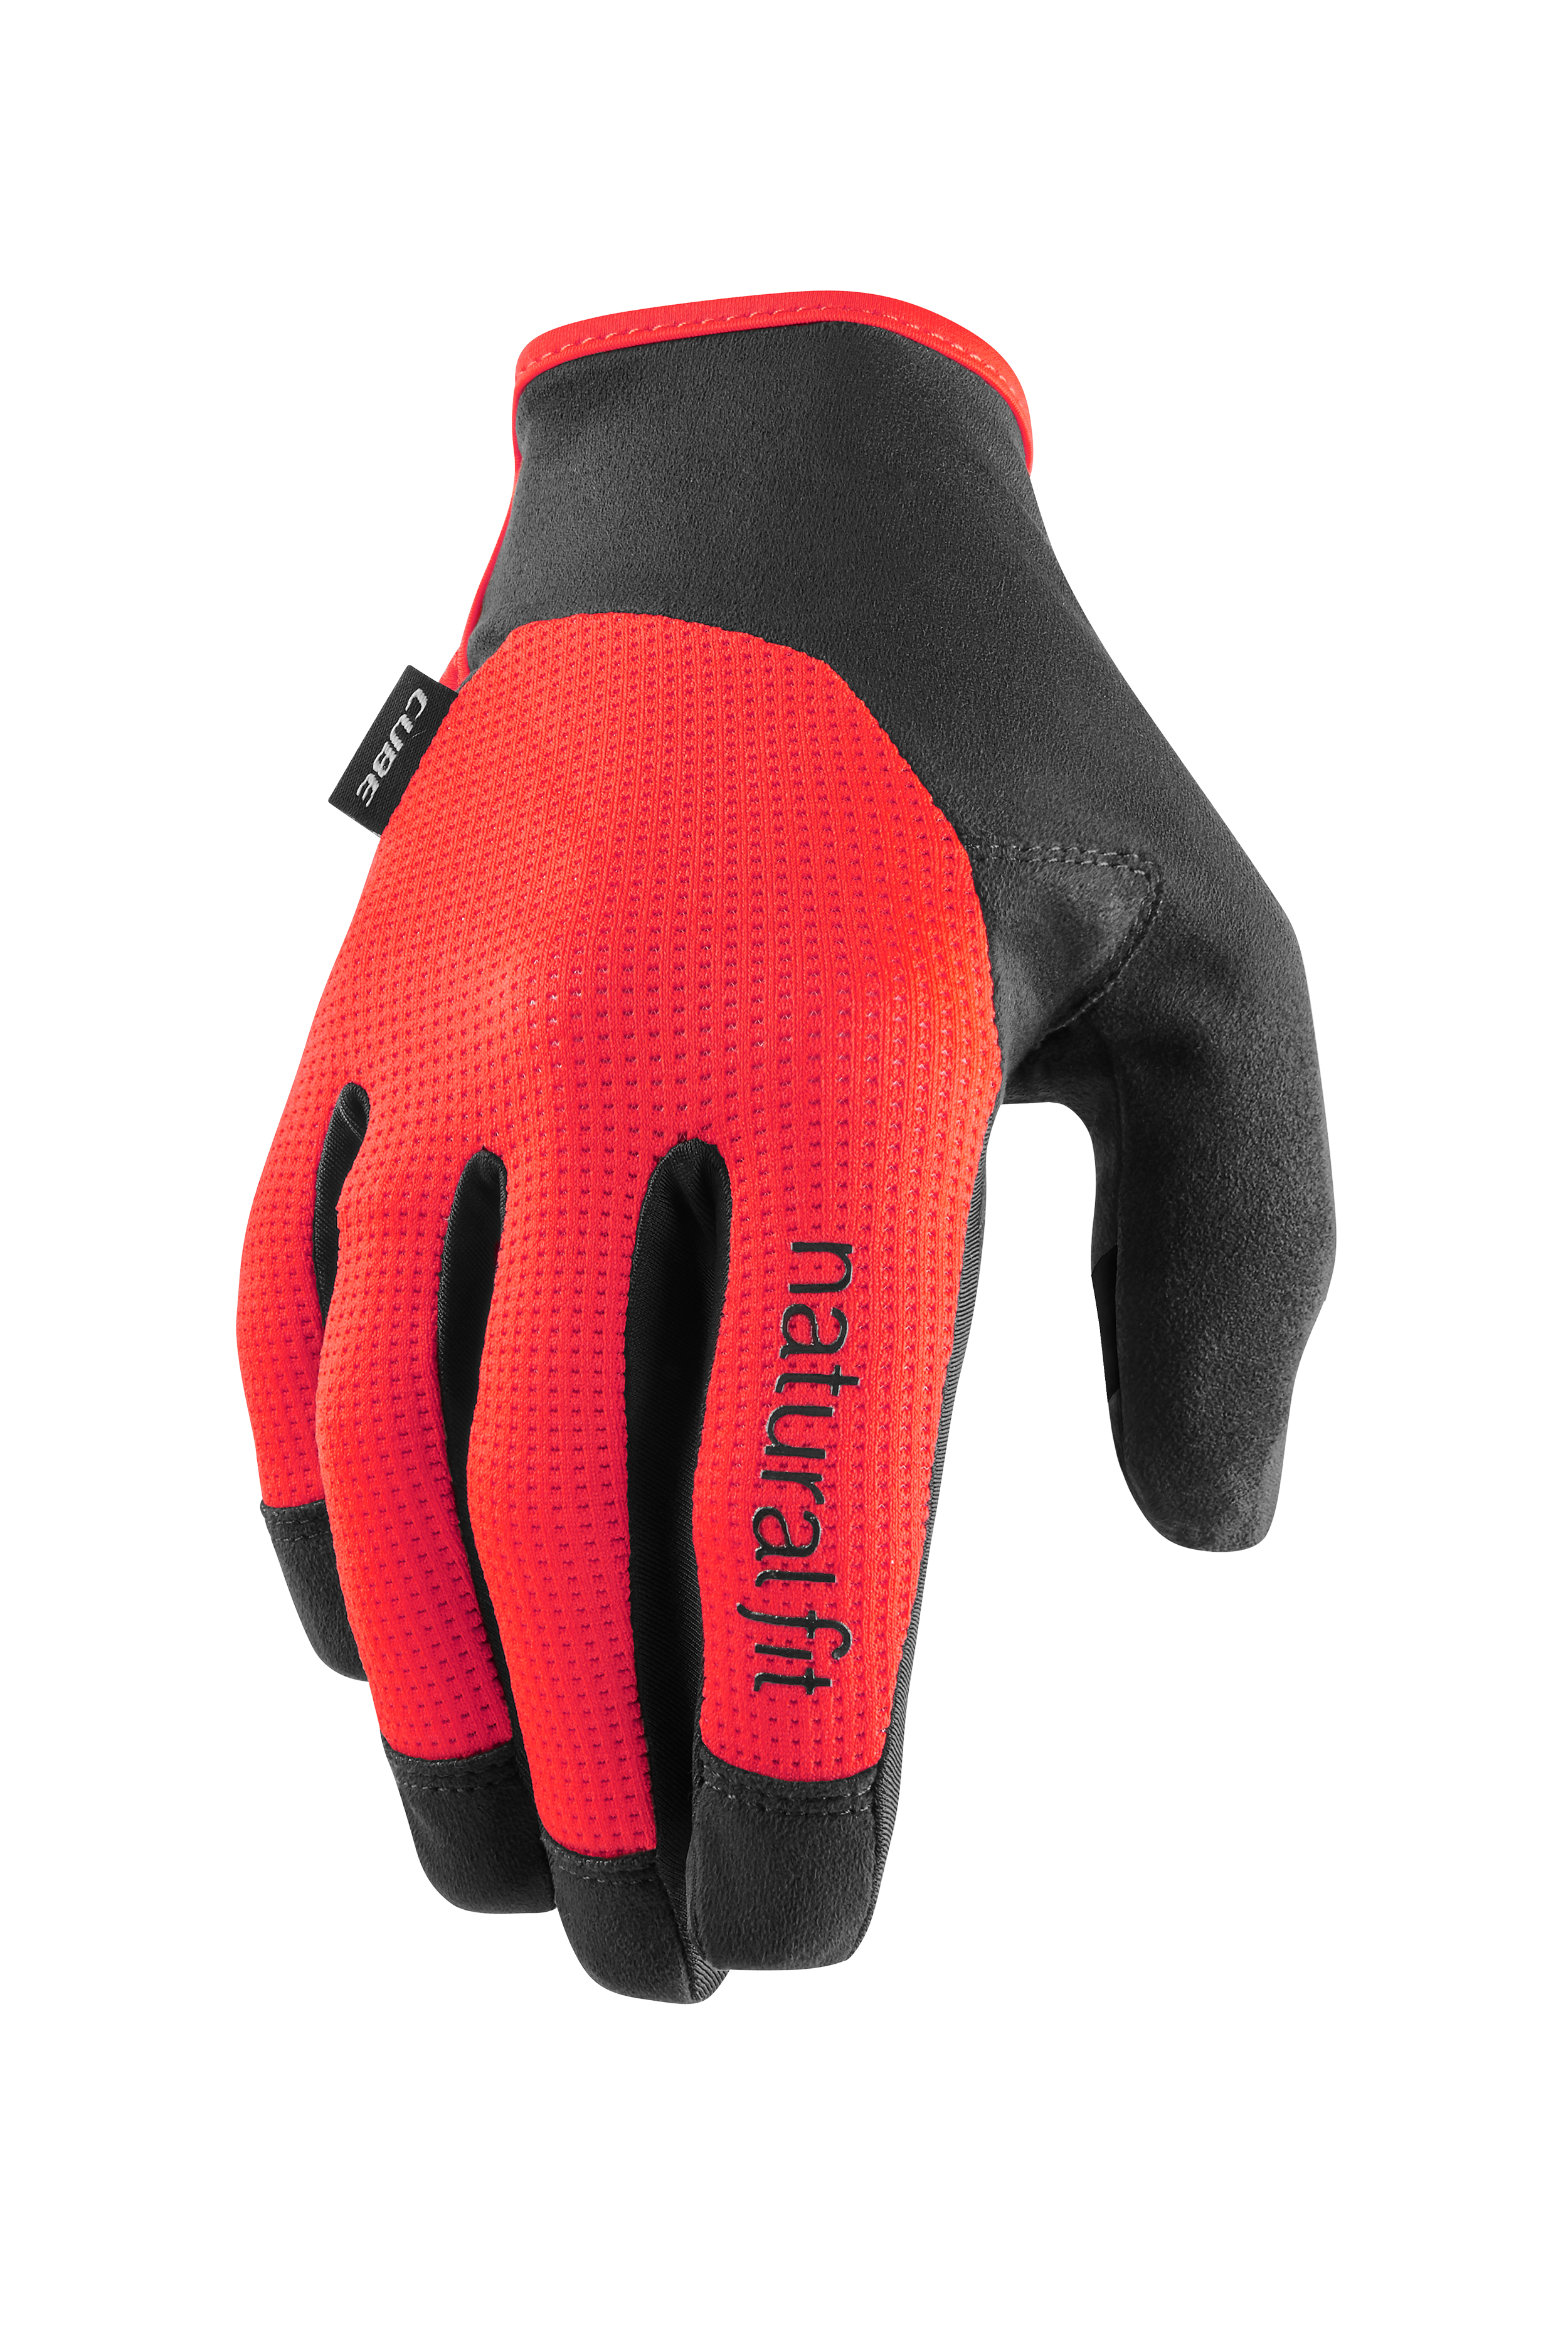 CUBE Gloves long finger X NF